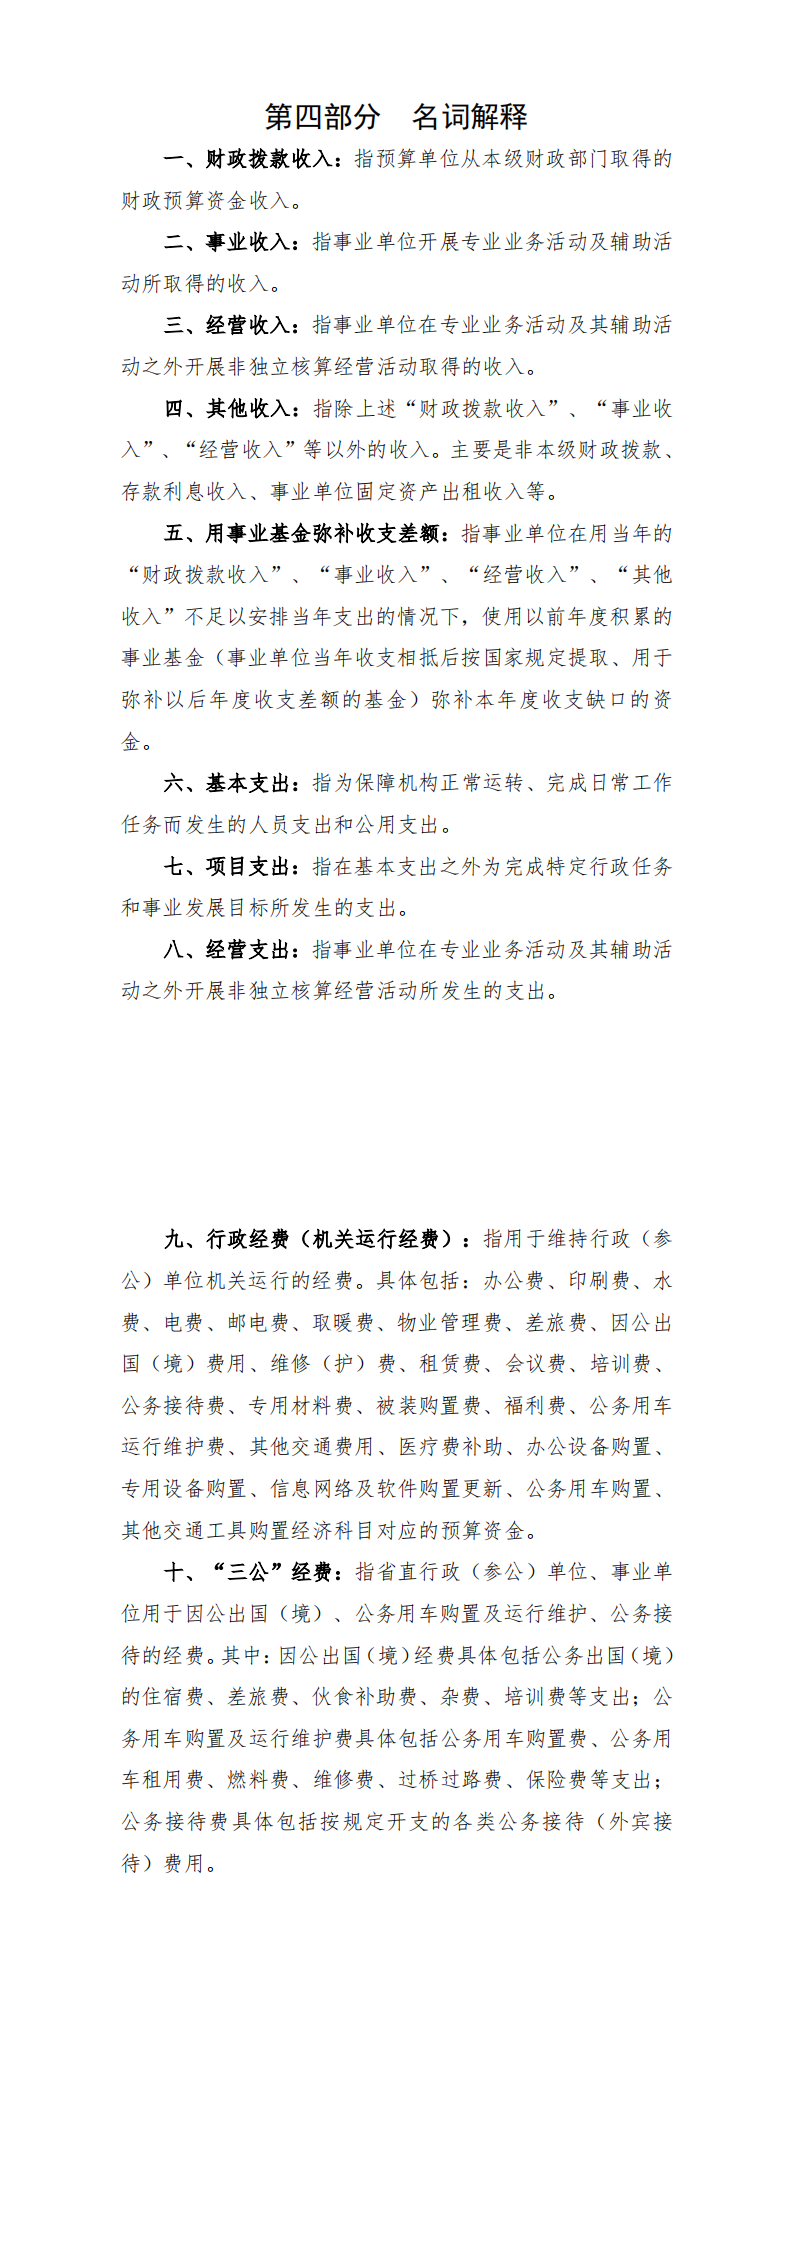 阳江高新技术产业开发区财政局2021年部门预算_1.png